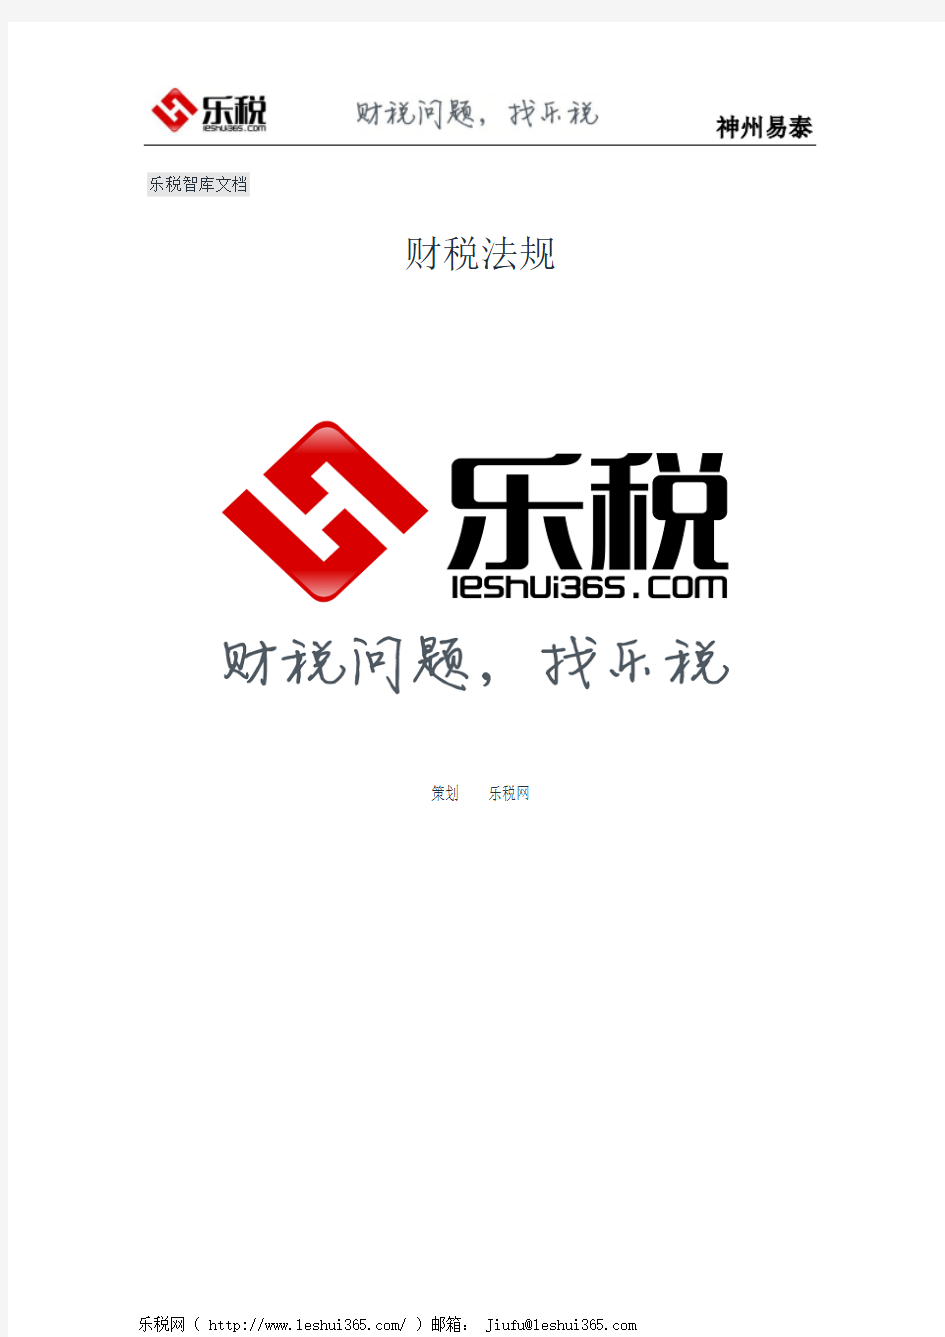 天津市地方税务局关于写字楼有关税收政策的通知